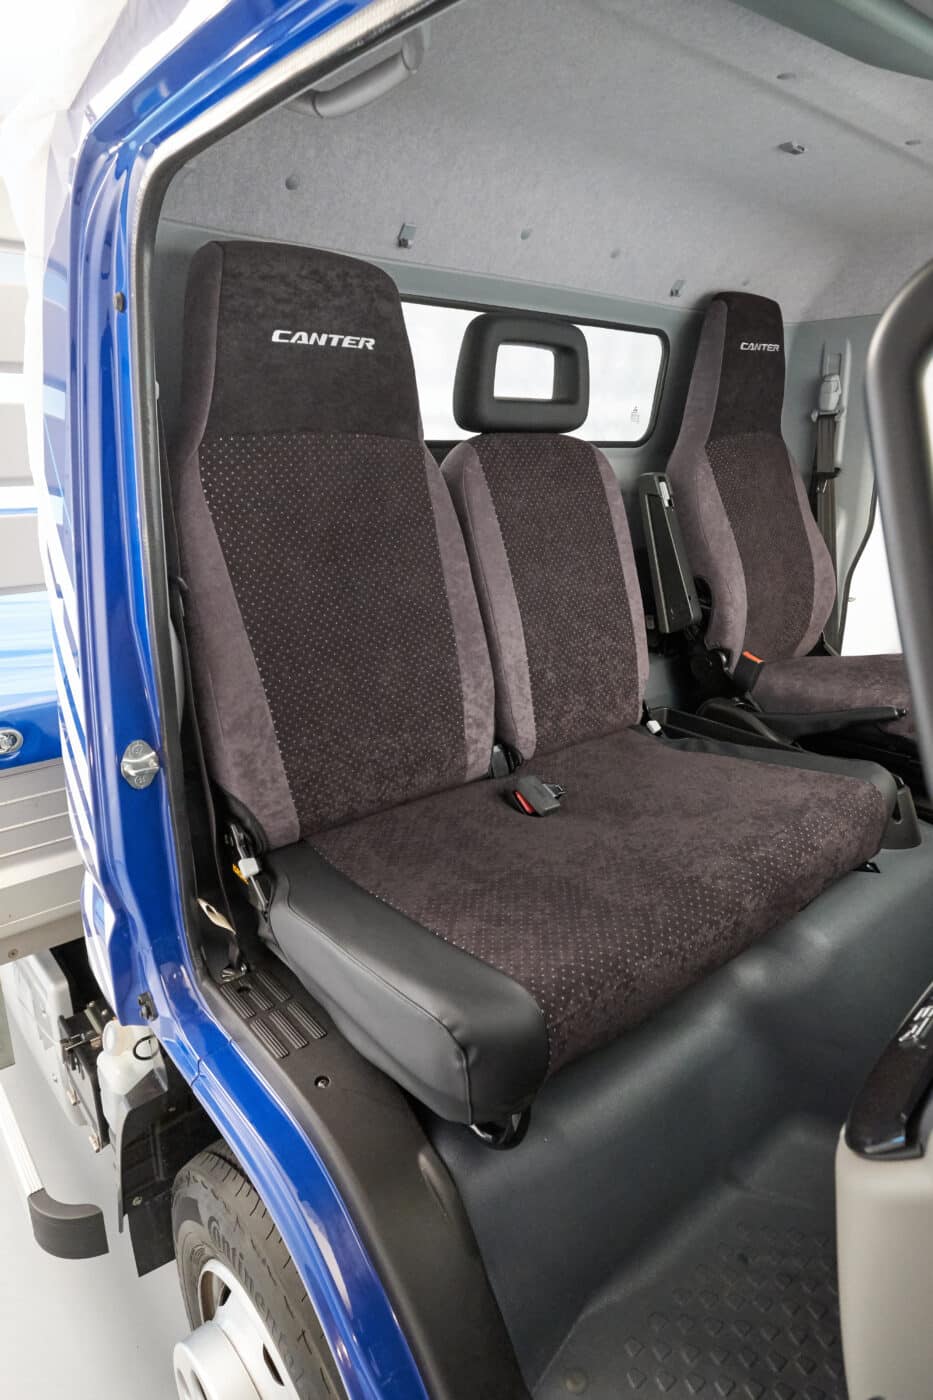 Poťah sedadla FUSO ponúka dokonalú ochranu interiéru pred opotrebovaním a nečistotami. Predlžuje životnosť sedadiel a svojím kvalitným vzhľadom prispieva k udržaniu hodnoty vášho automobilu Canter. S poťahom sedadiel FUSO „ALCANTA“ dodáte svojmu interiéru štýlový nádych. Všetky poťahy sedadiel navyše ponúkajú maximálne pohodlie bez obmedzenia funkčnosti, ako napríklad pri integrovanom stole dvojitého sedadla spolujazdca.